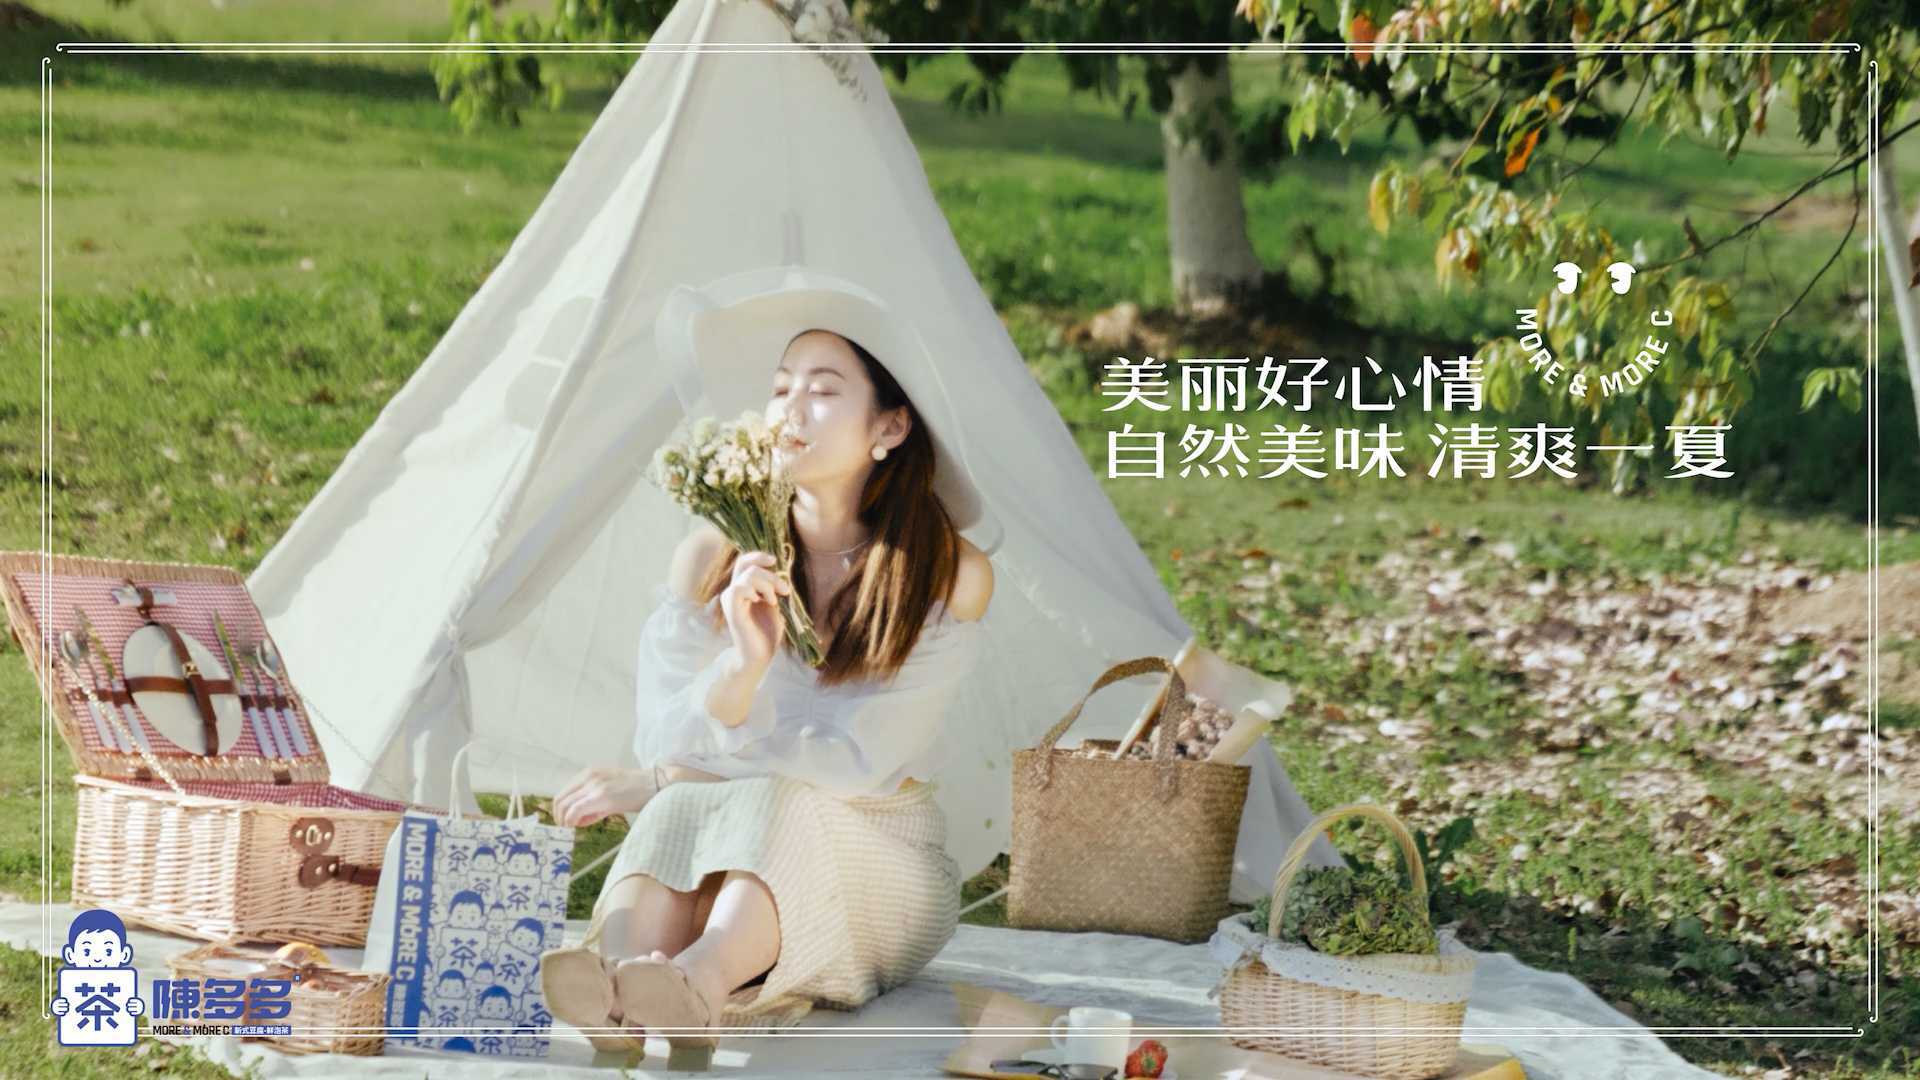 《陈多多豆腐奶茶》产品剧情片